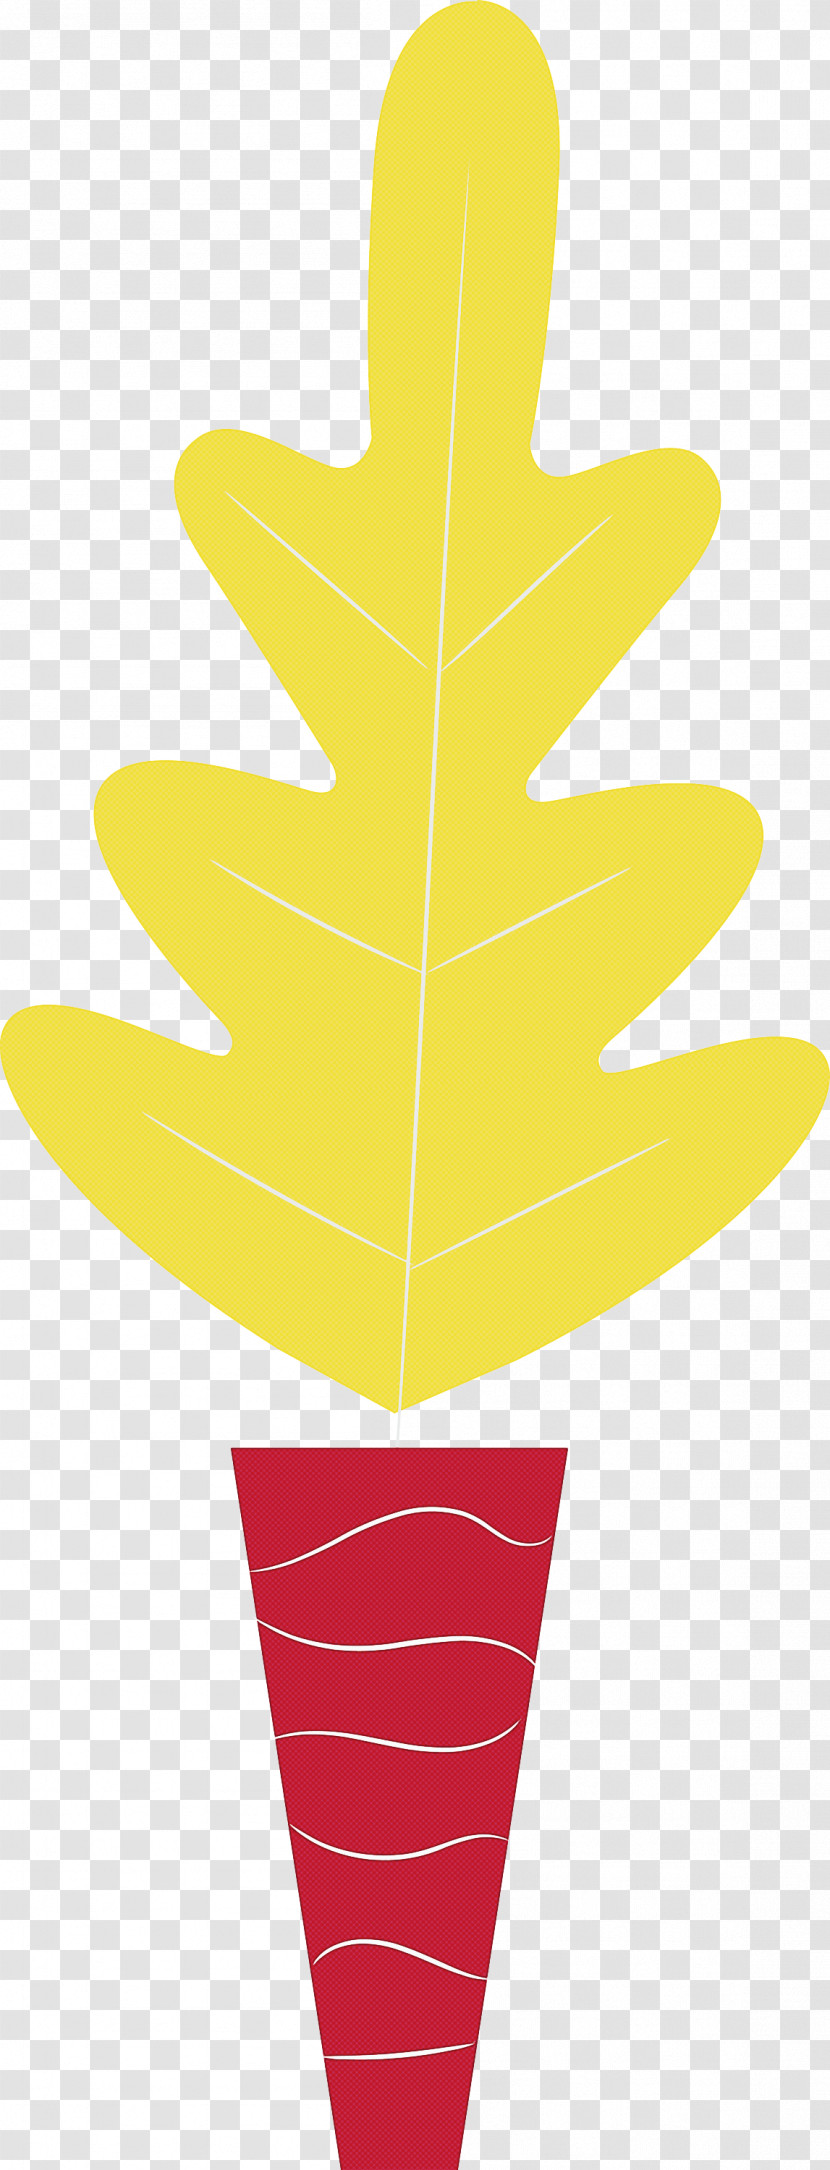 Leaf Plant Stem Circle Triangle Leaf Angle Distribution Transparent PNG